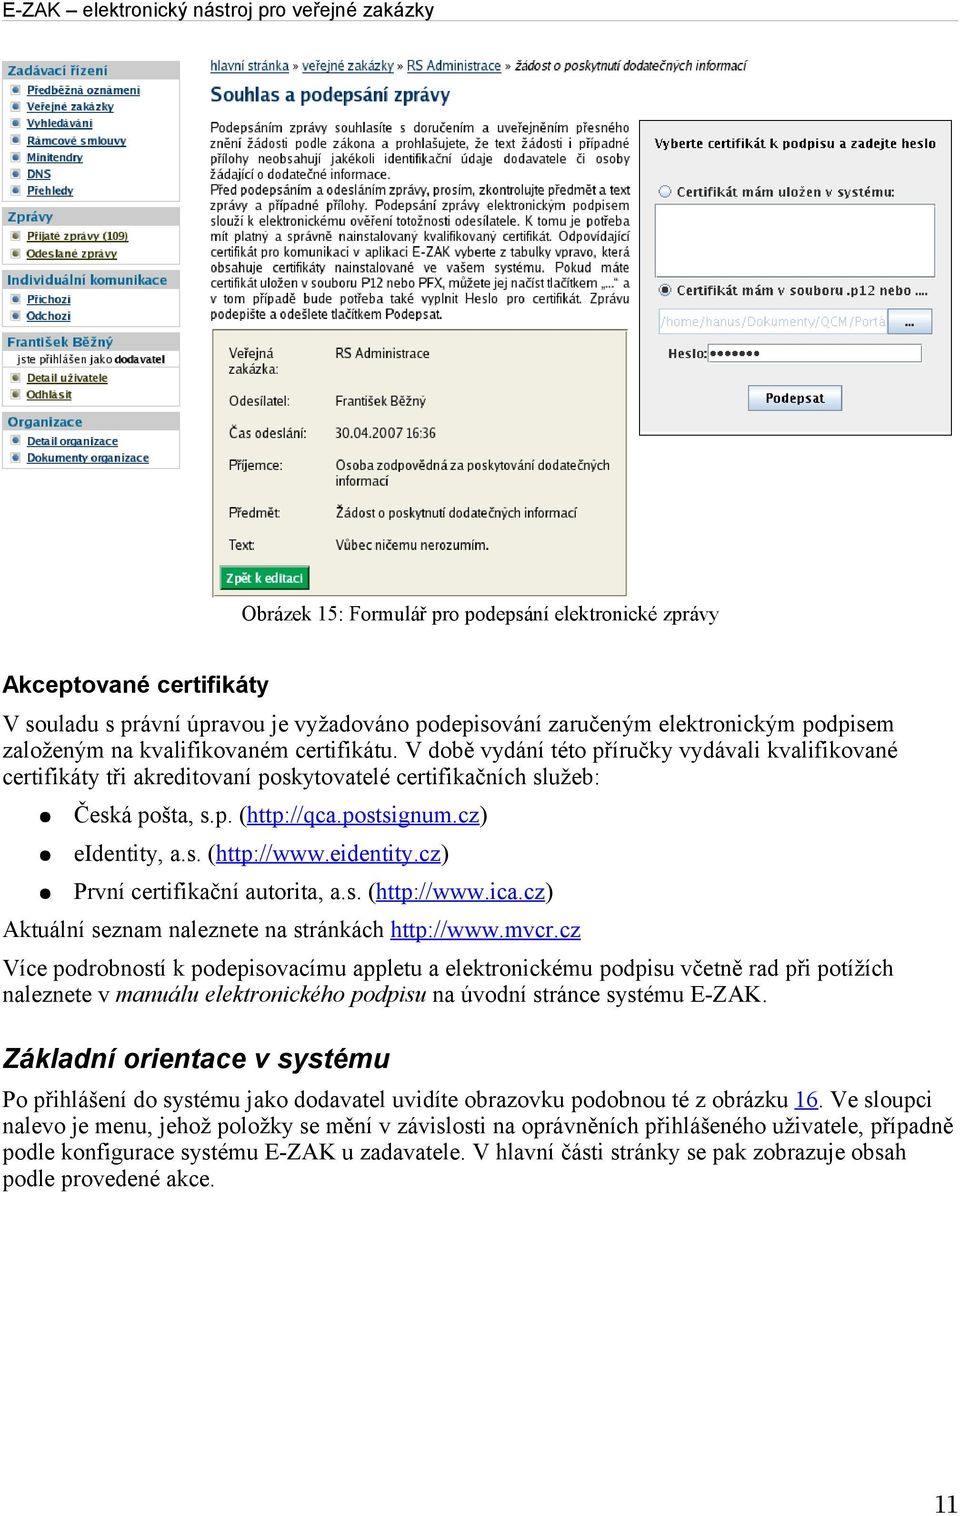 eidentity.cz) První certifikační autorita, a.s. (http://www.ica.cz) Aktuální seznam naleznete na stránkách http://www.mvcr.